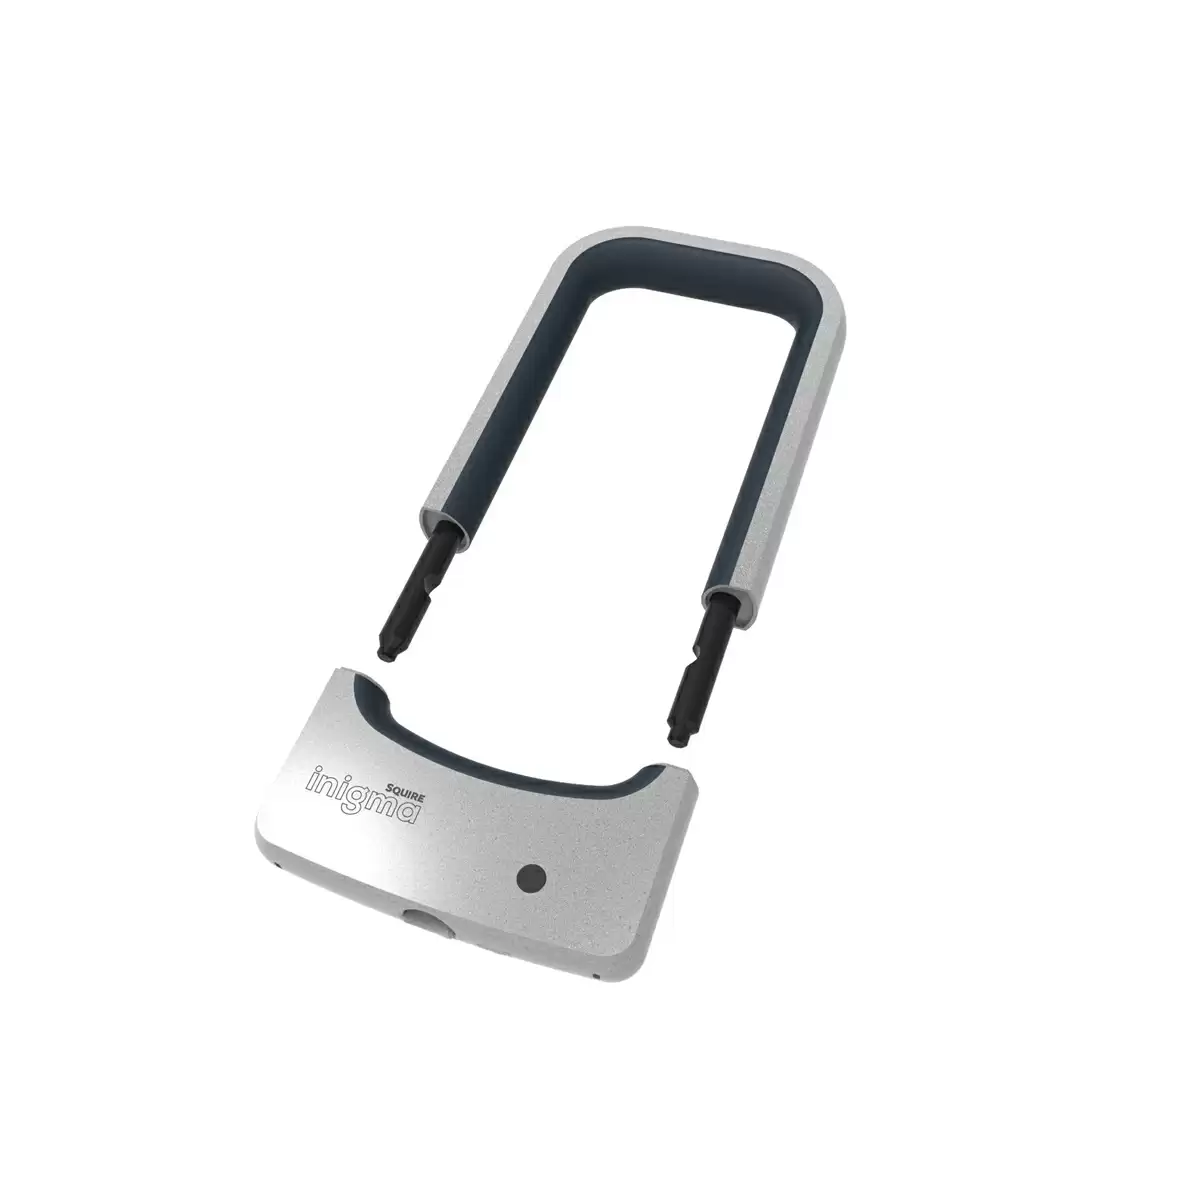 Bluetooth Bikelock Inigma BL1 190mm öffnen / schließen mit Smartphone - image